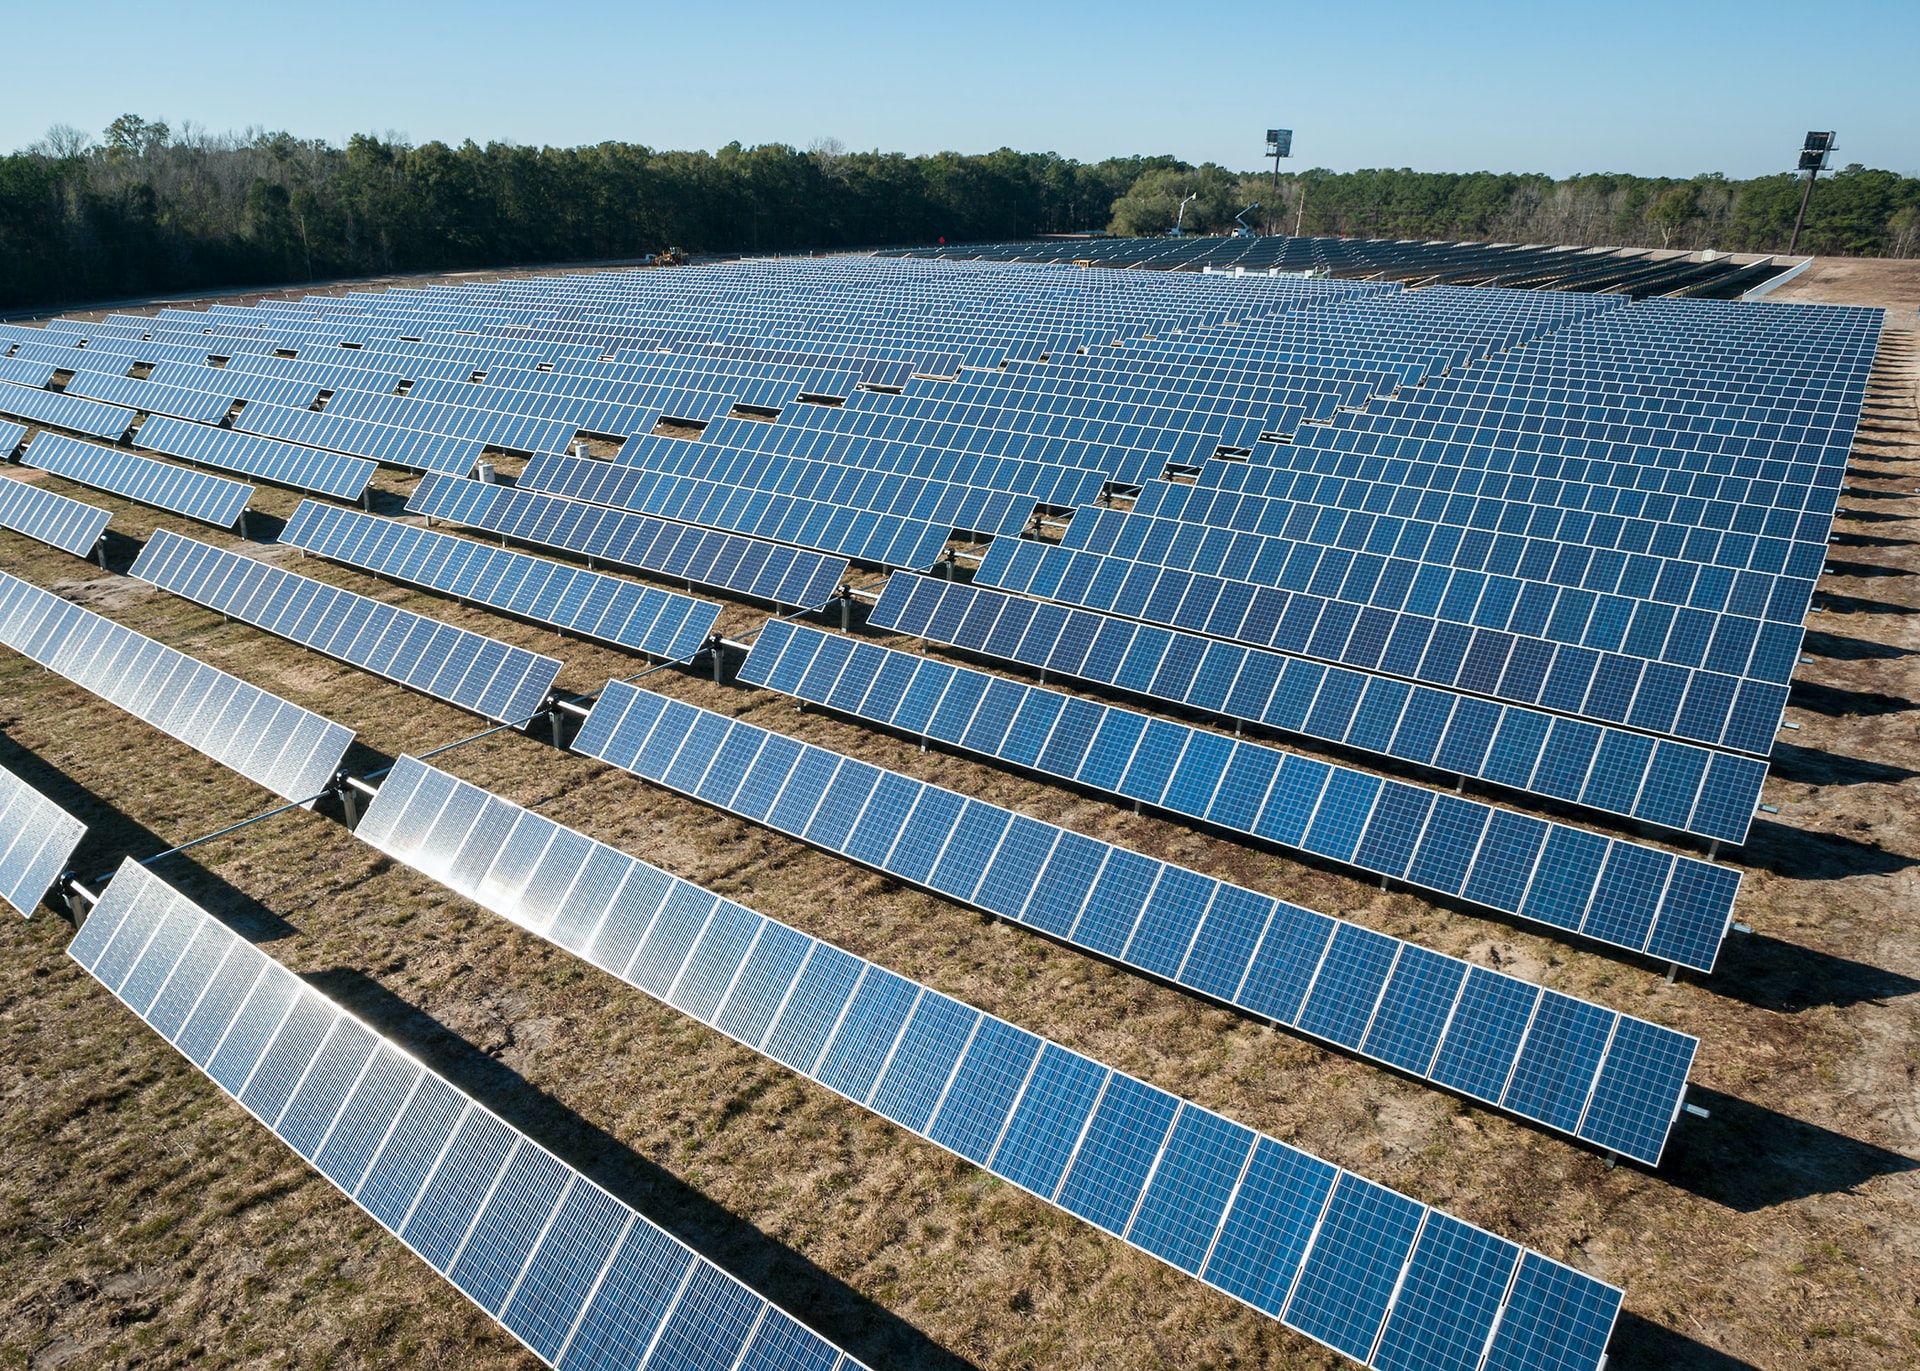 Solar Development Surges Across Asia’s Power Markets